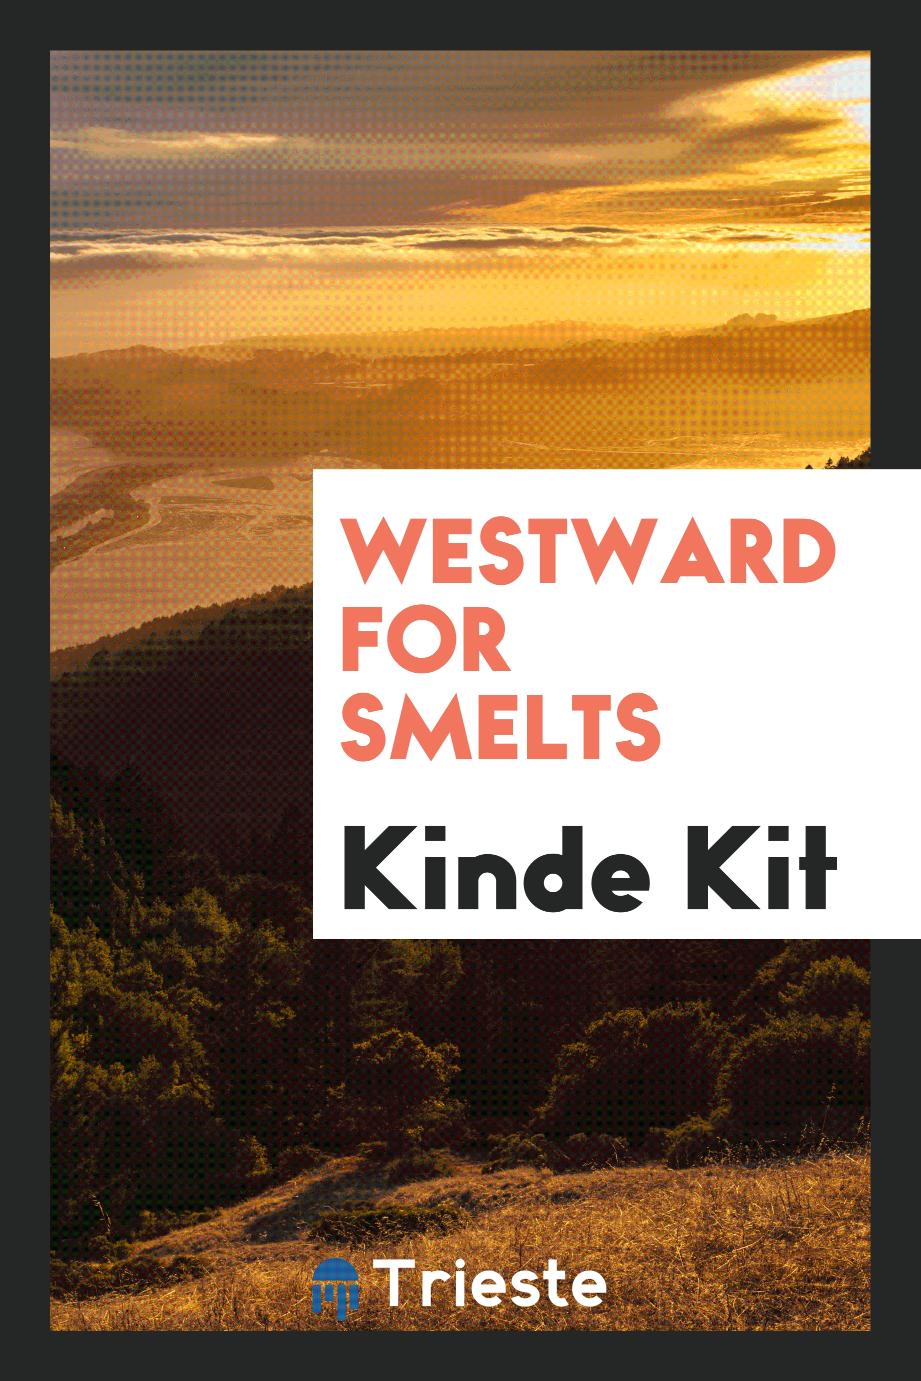 Westward for smelts